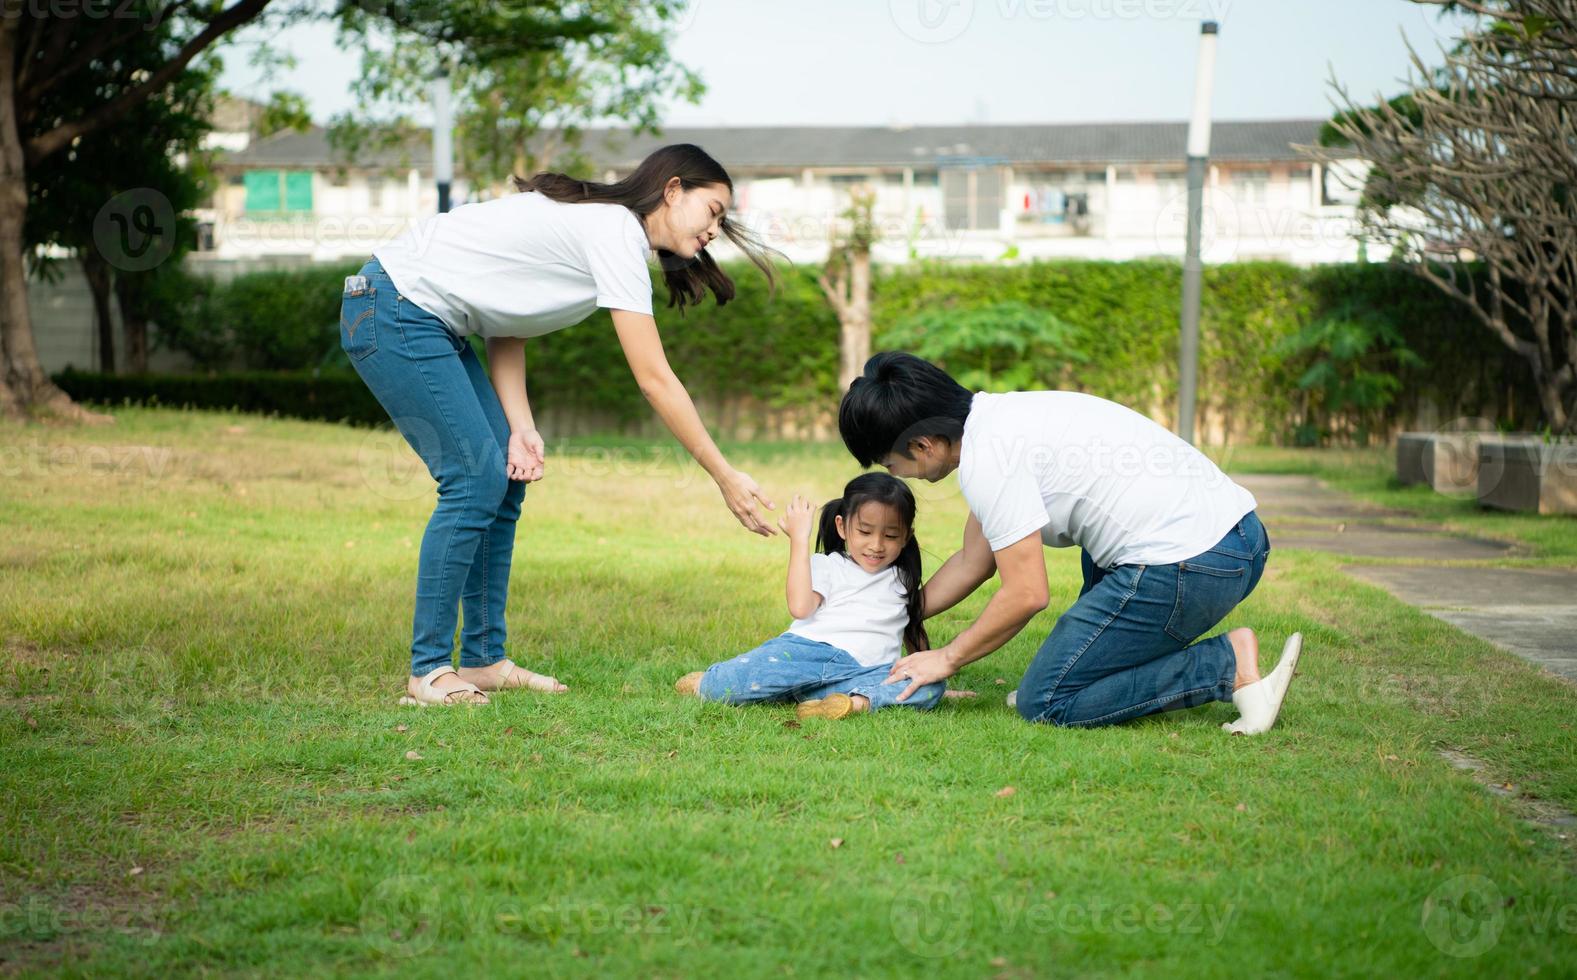 uma garotinha ficou levemente ferida enquanto brincava com seus pais, confortando-a ao seu lado. foto